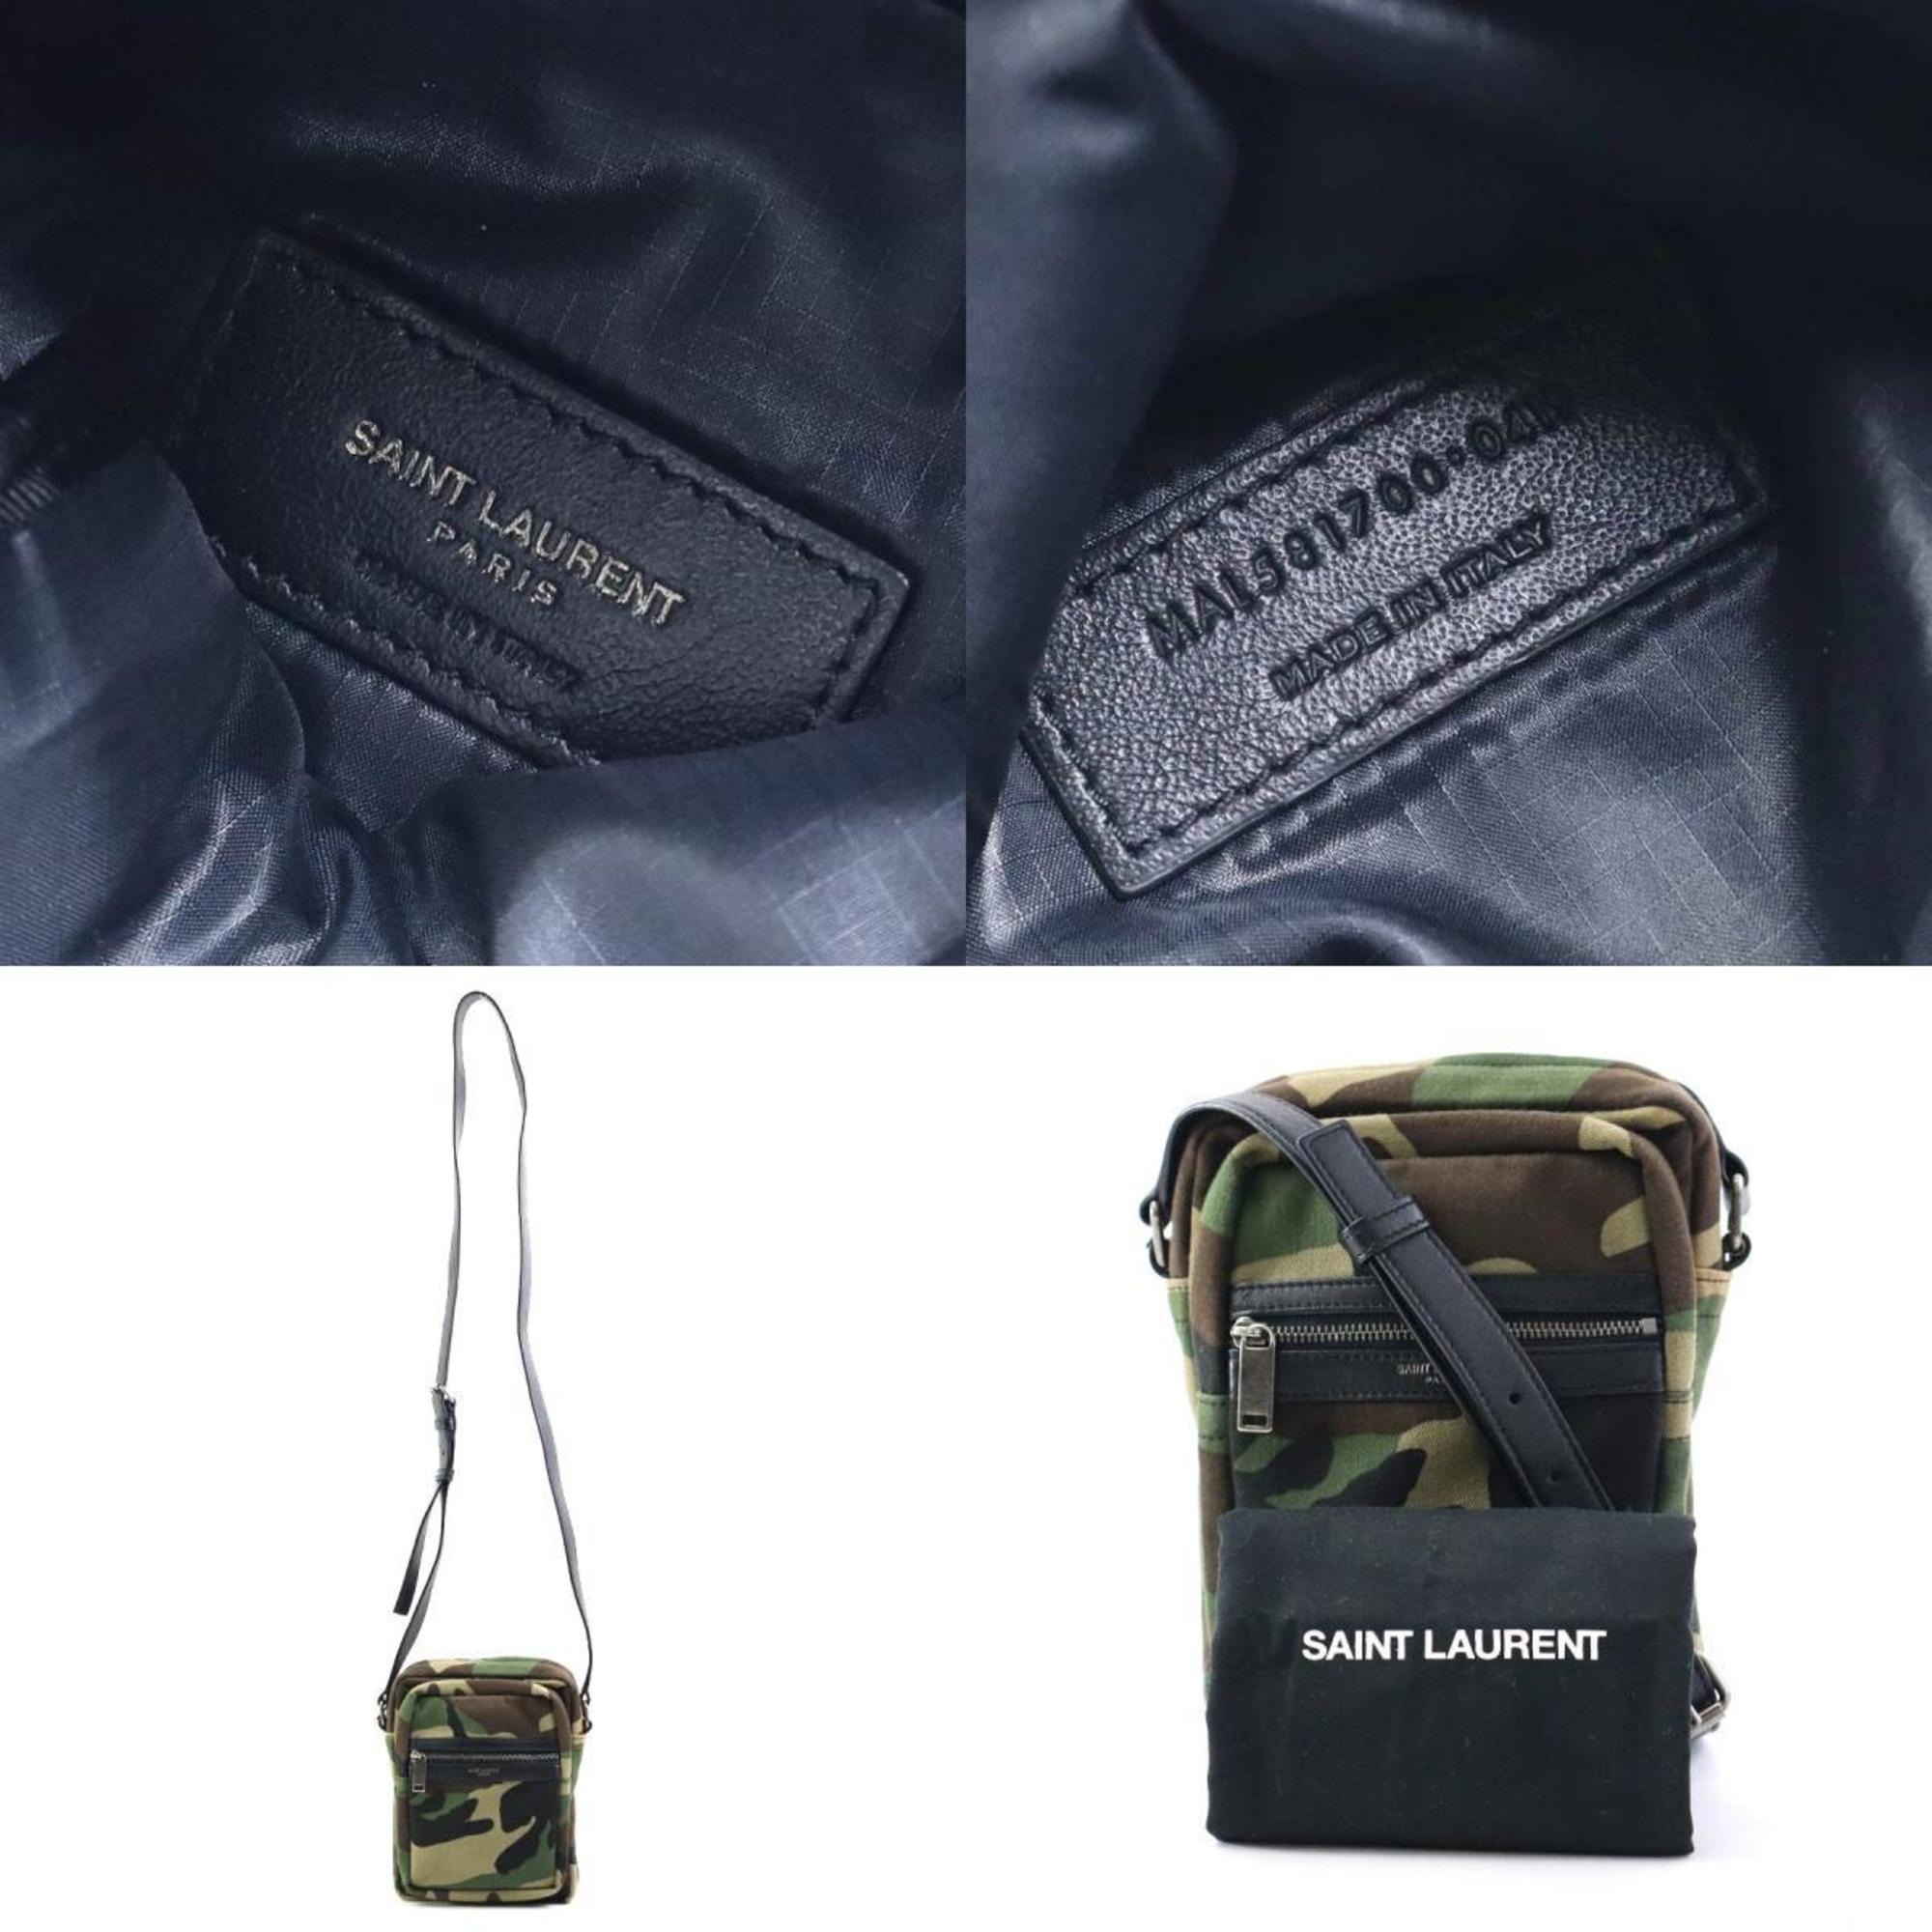 Saint Laurent SAINT LAURENT Crossbody Shoulder Bag Canvas/Leather Khaki x Black Unisex 581700